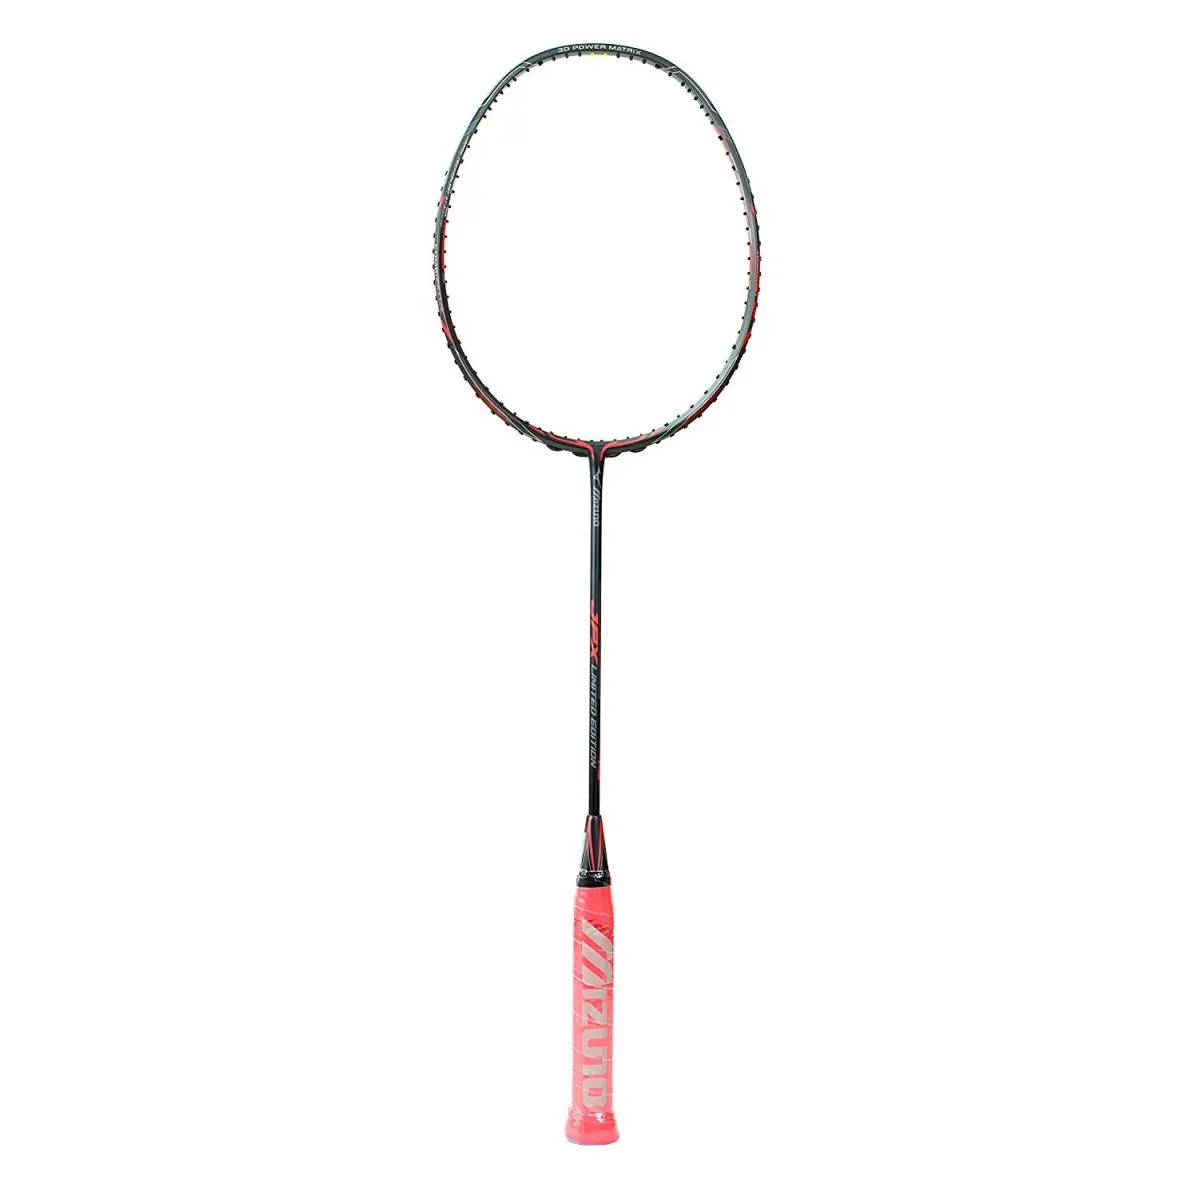 Buy Mizuno Limited Edition Badminton @ price - Sportsuncle